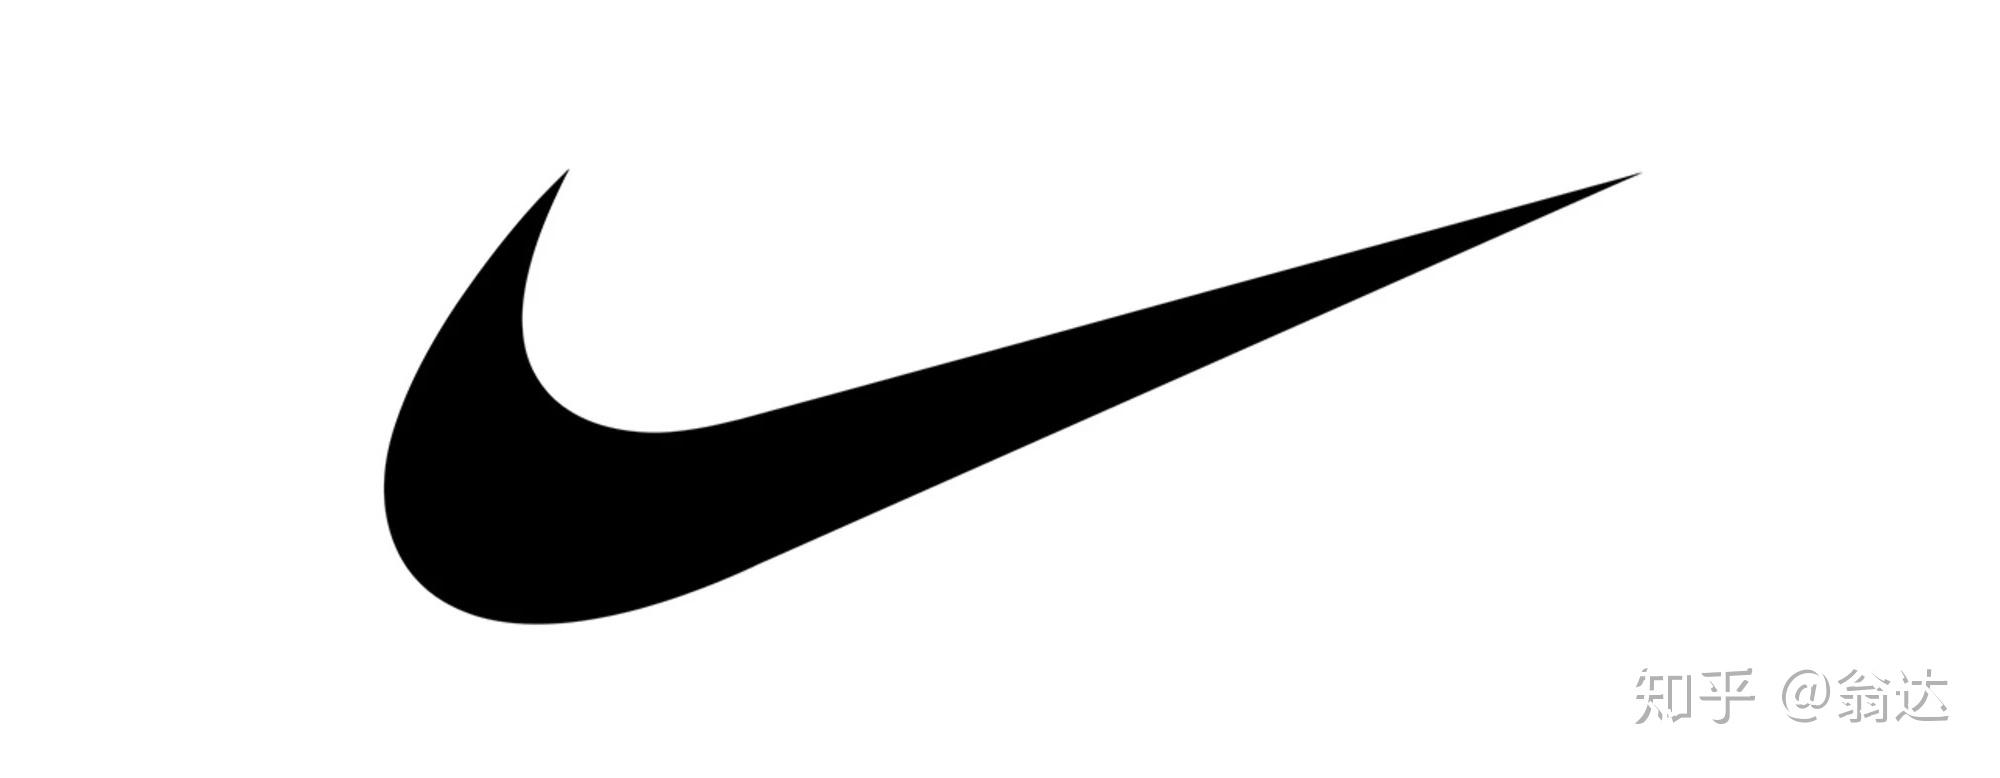 耐克发布React Infinity Run跑鞋 - Nike_耐克足球鞋 - SoccerBible中文站_足球鞋_PDS情报站